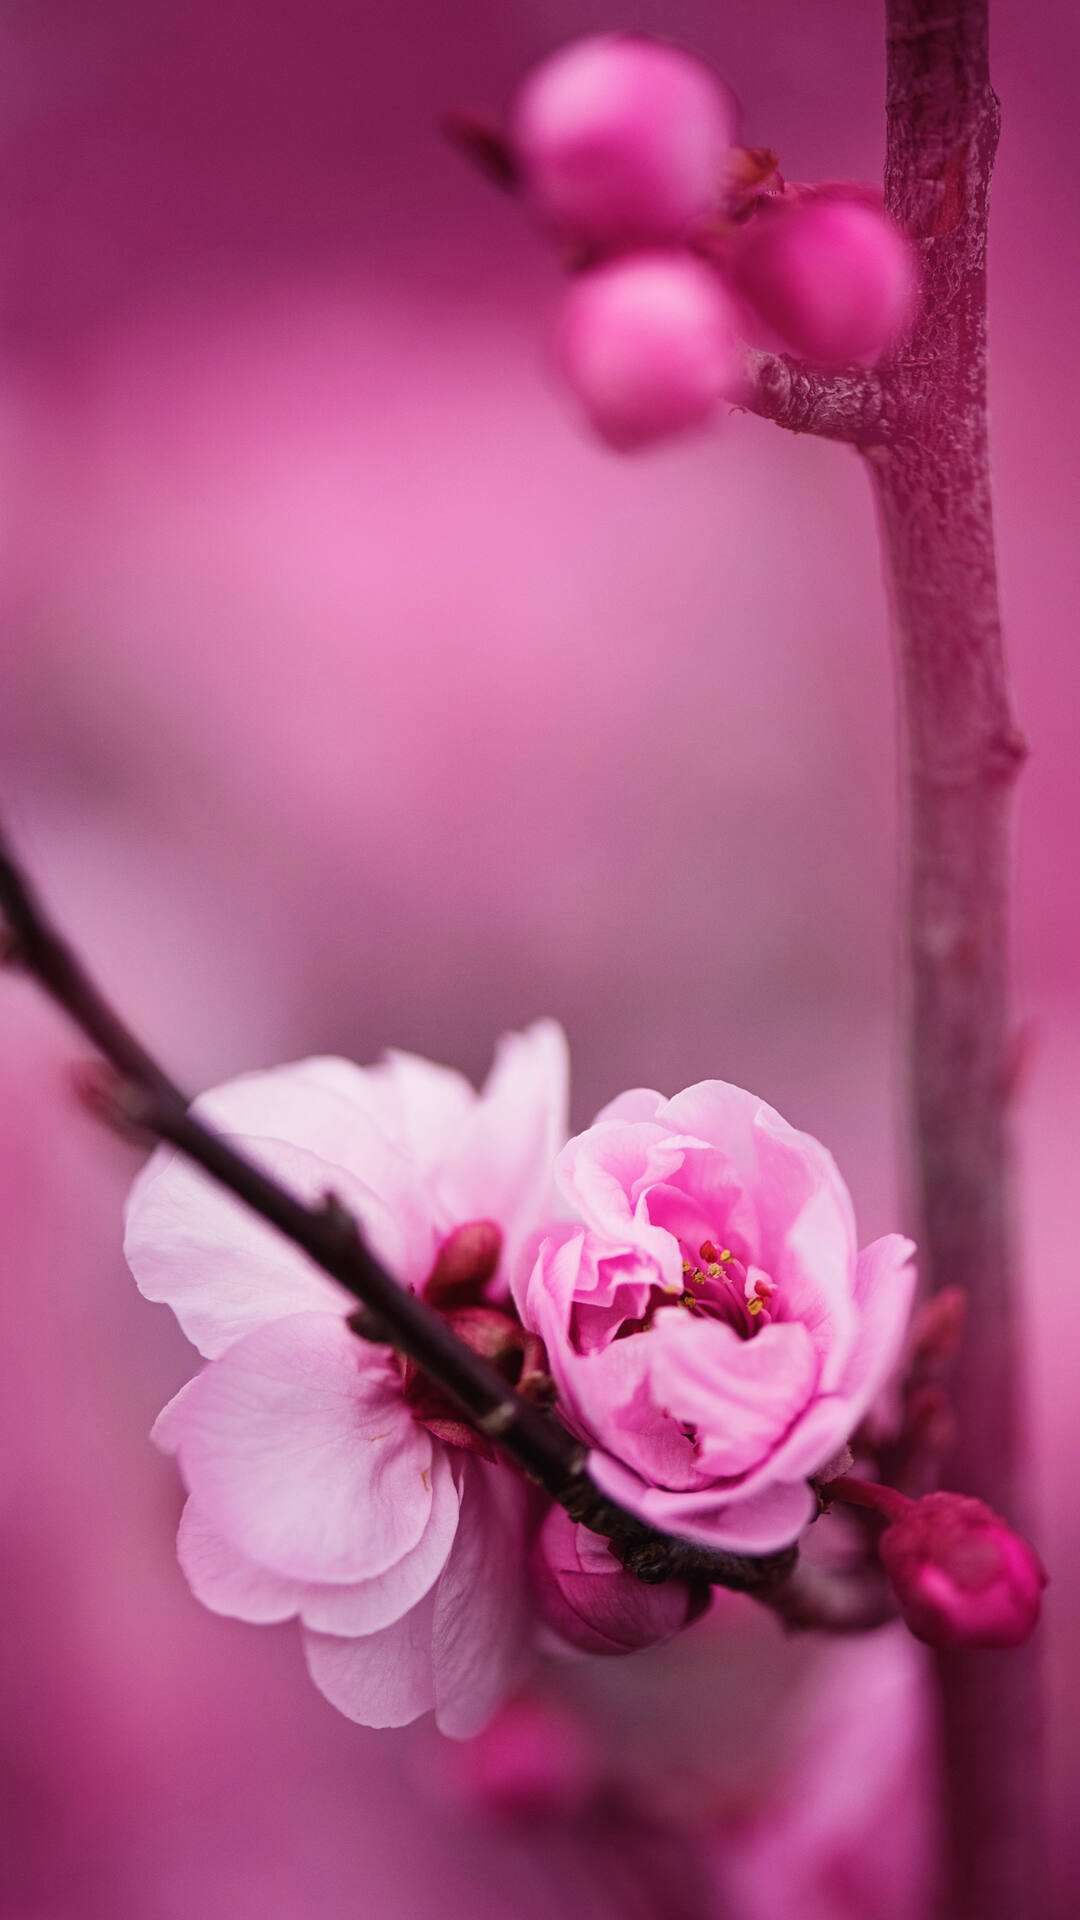 盛开的粉色蔷薇科植物樱花的唯美摄影手机壁纸第1张壁纸